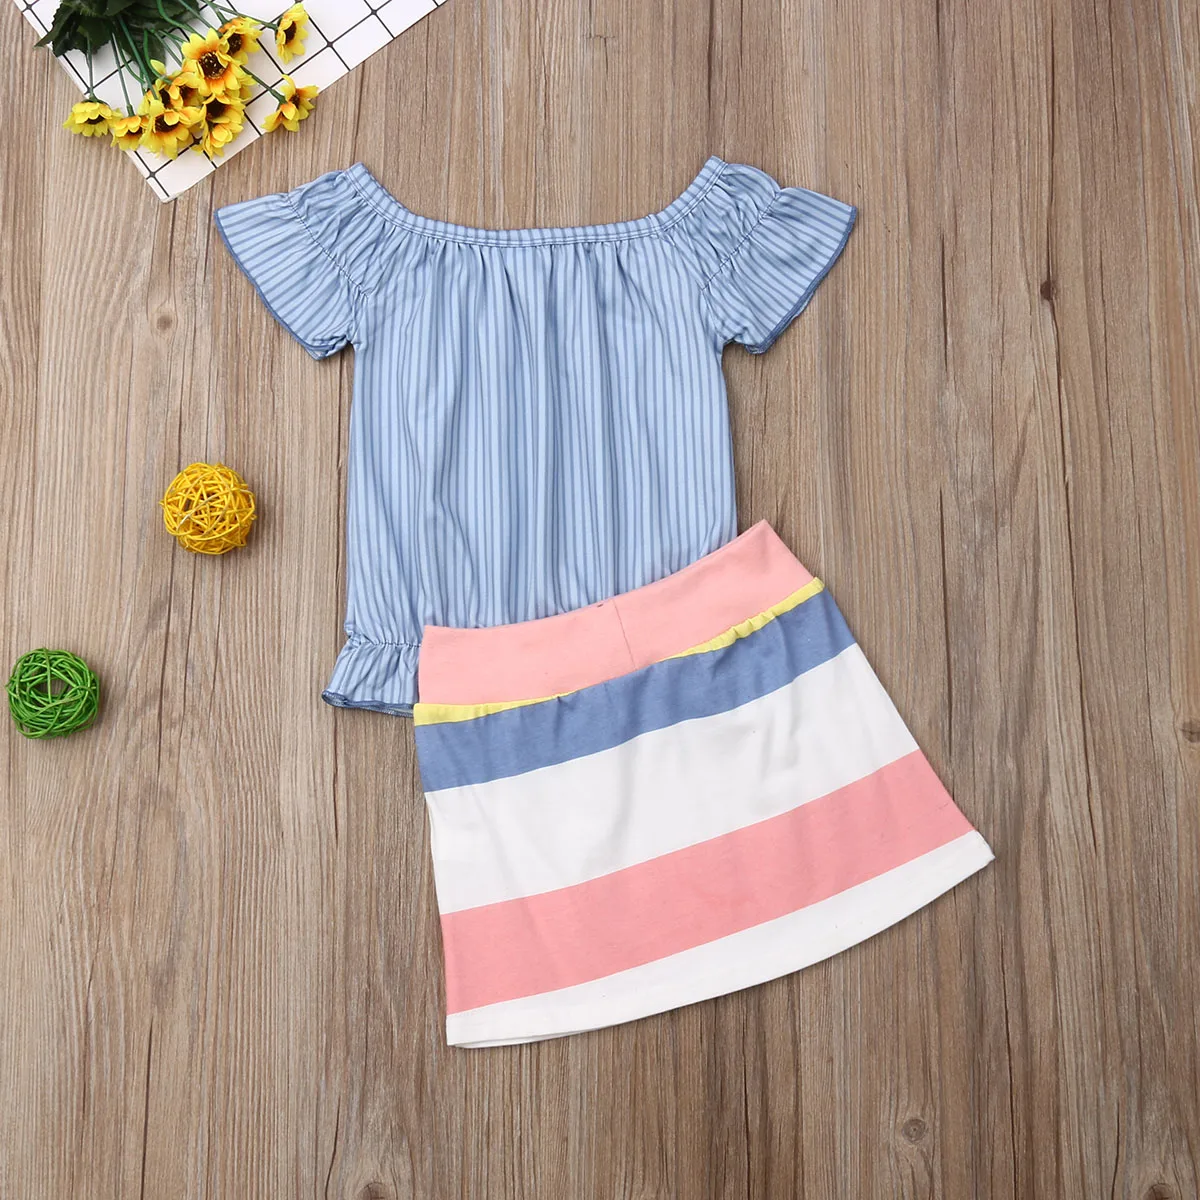 Новые модные летние комплекты одежды для маленьких девочек от 2 до 7 лет футболки в синюю полоску Топы+ мини-юбки